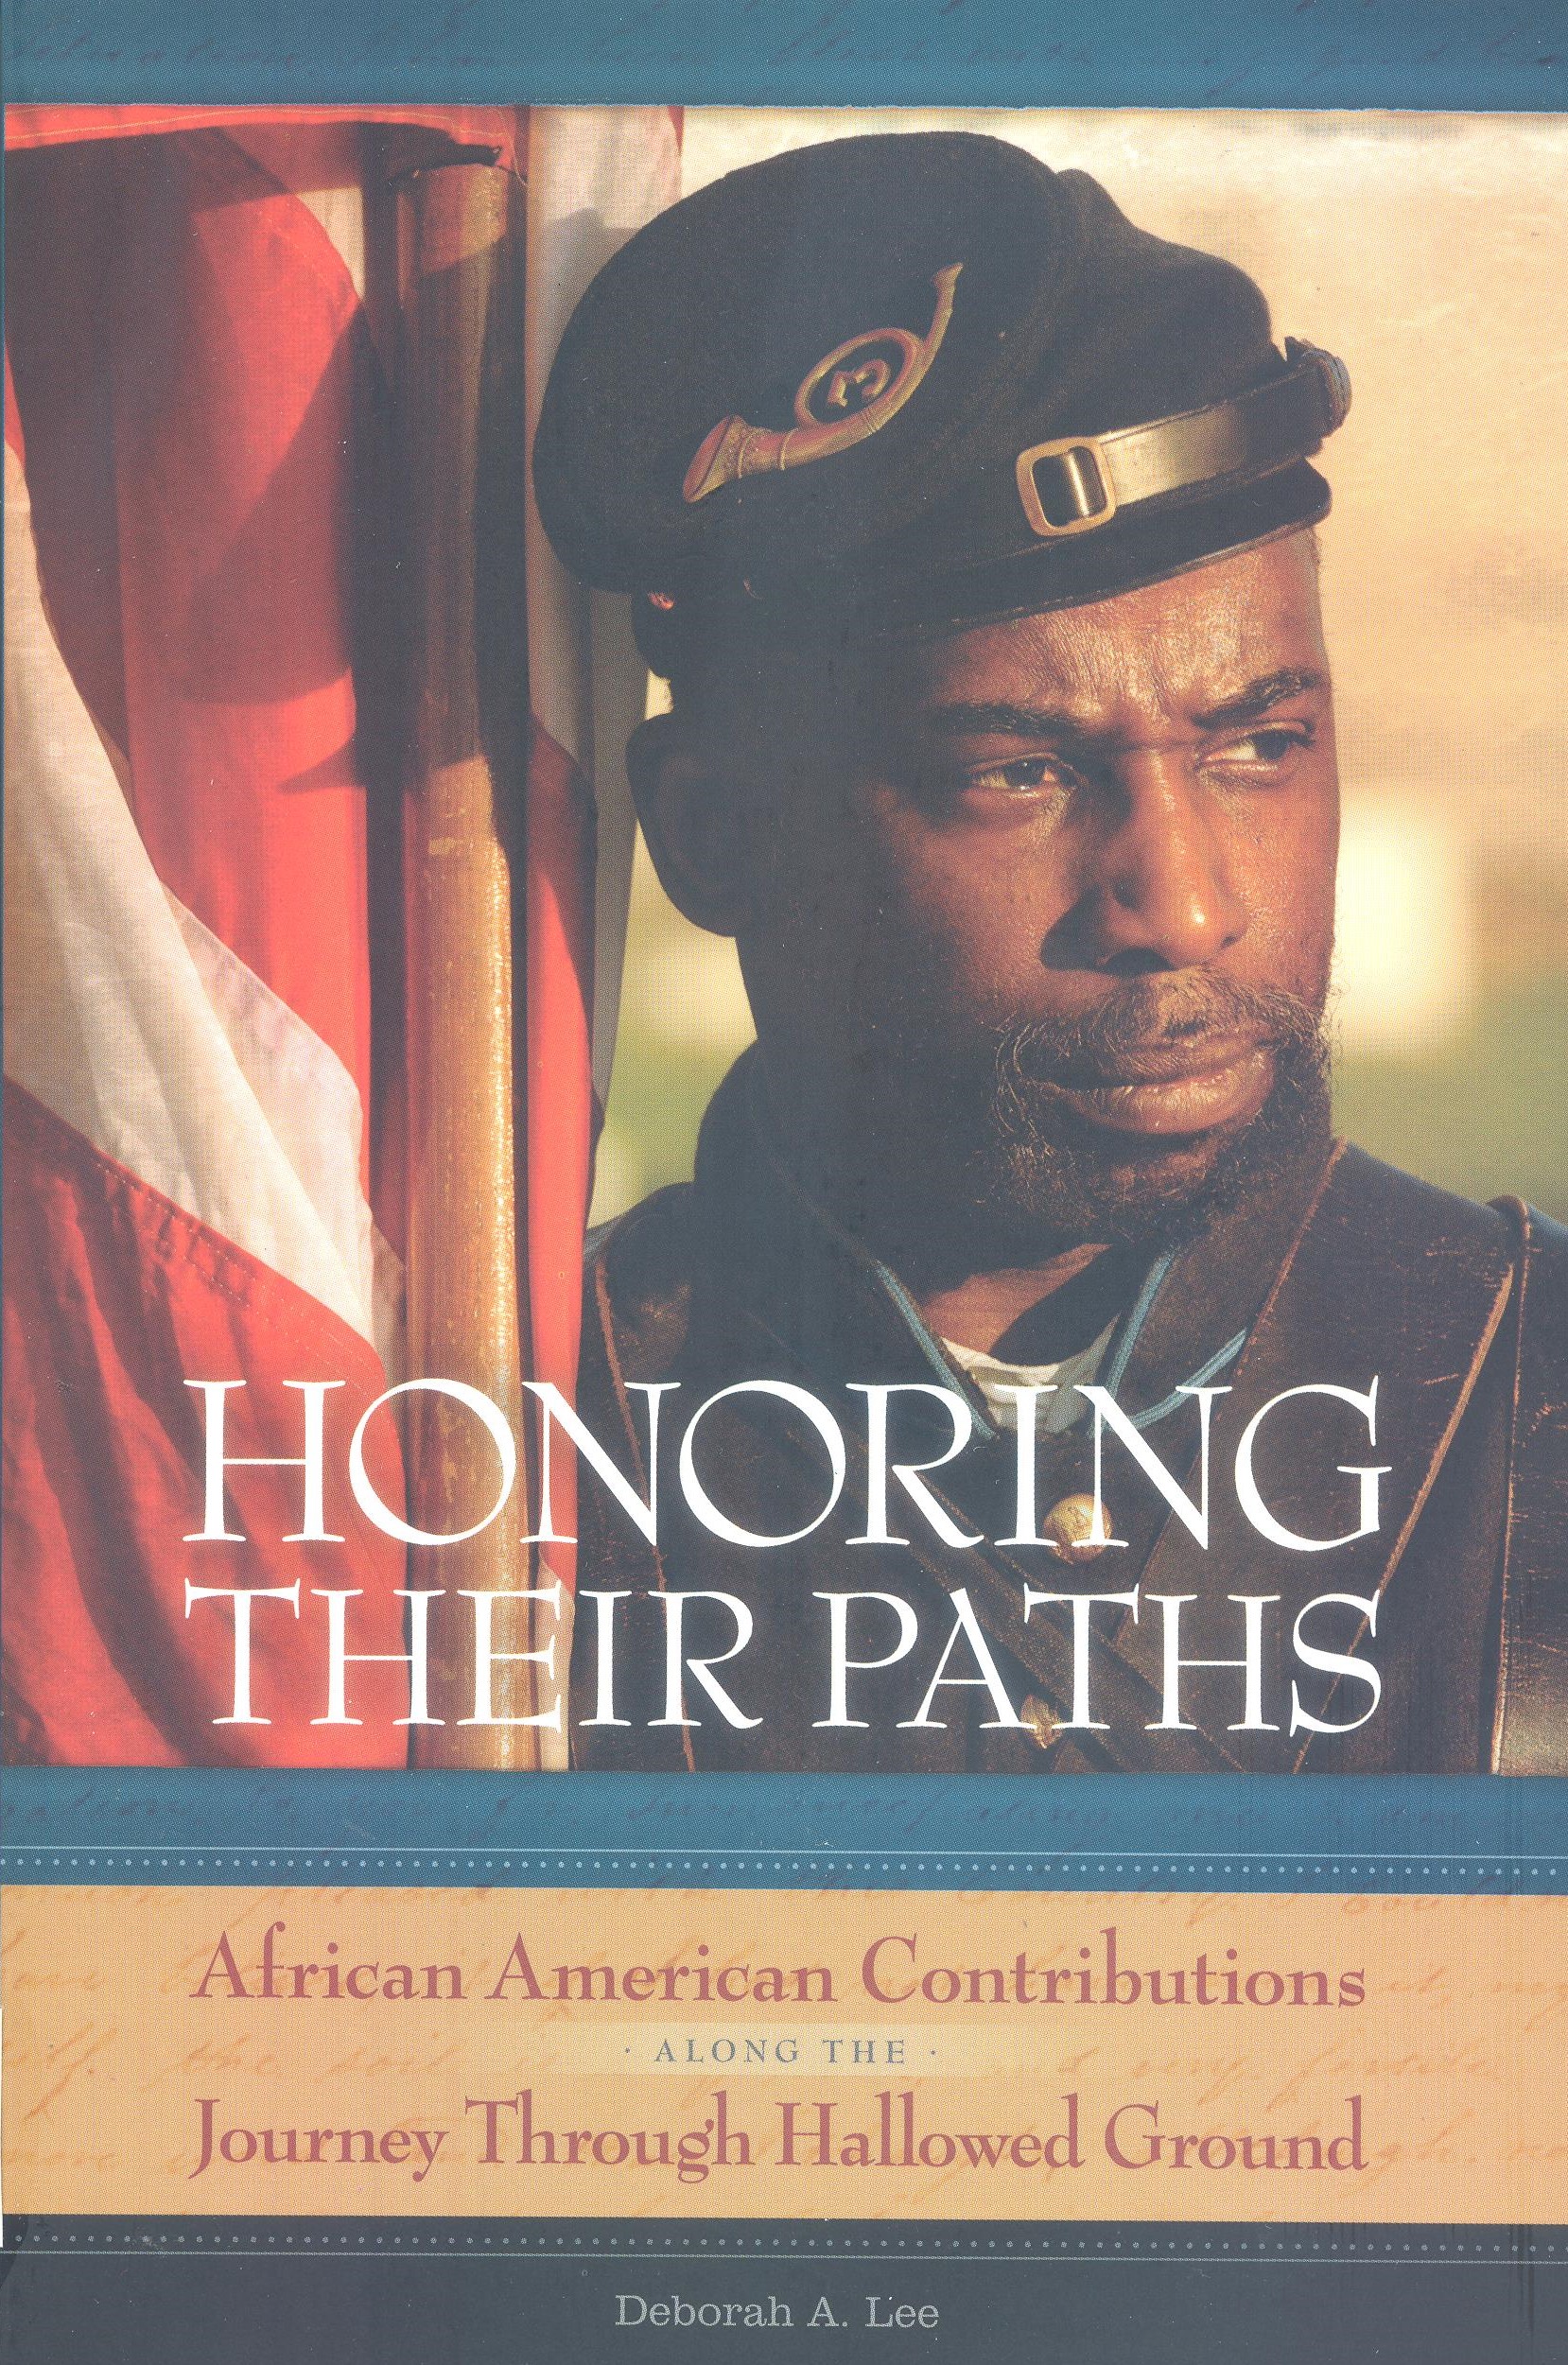 Honoring Their Paths by Deborah A. Lee